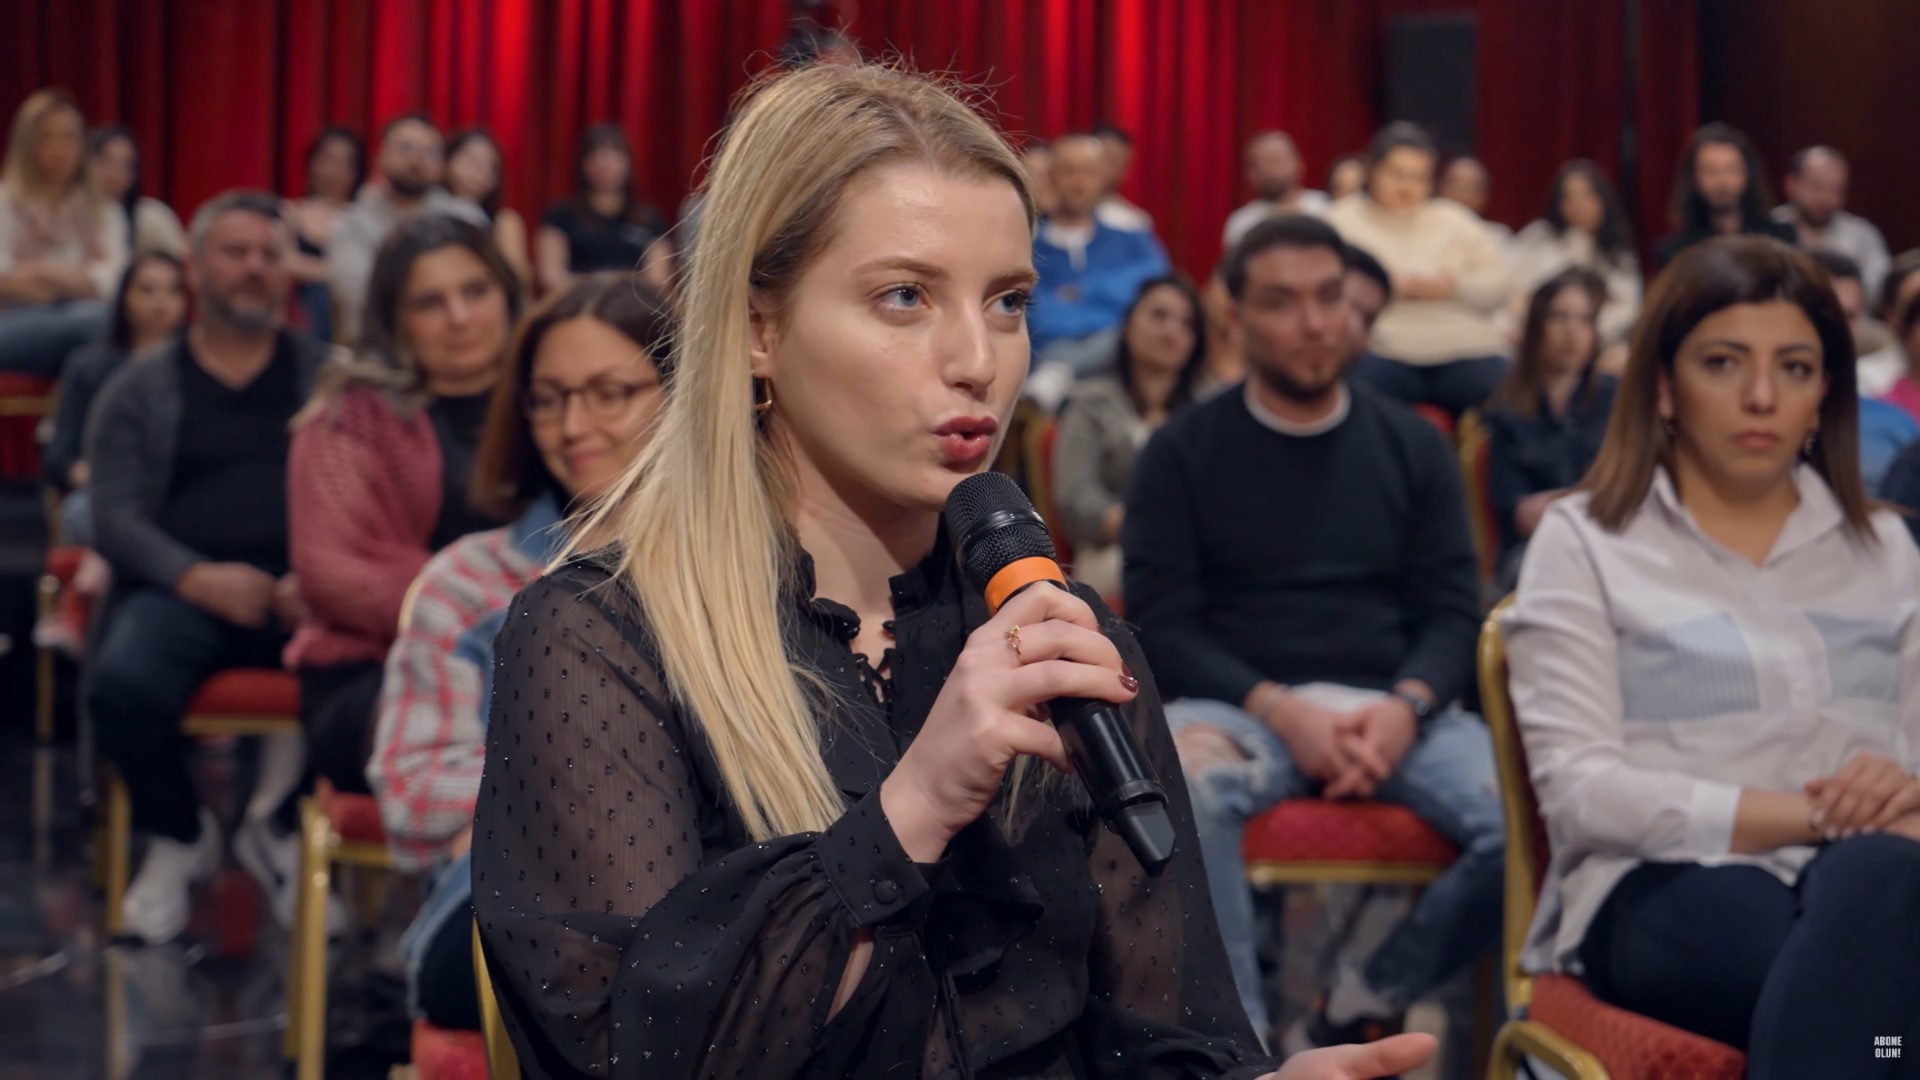 Konuşanlar'da kadın konuşandan flaş itiraf: Türkleri kaba göstermemek için Rus kadının öpmesine izin veridm